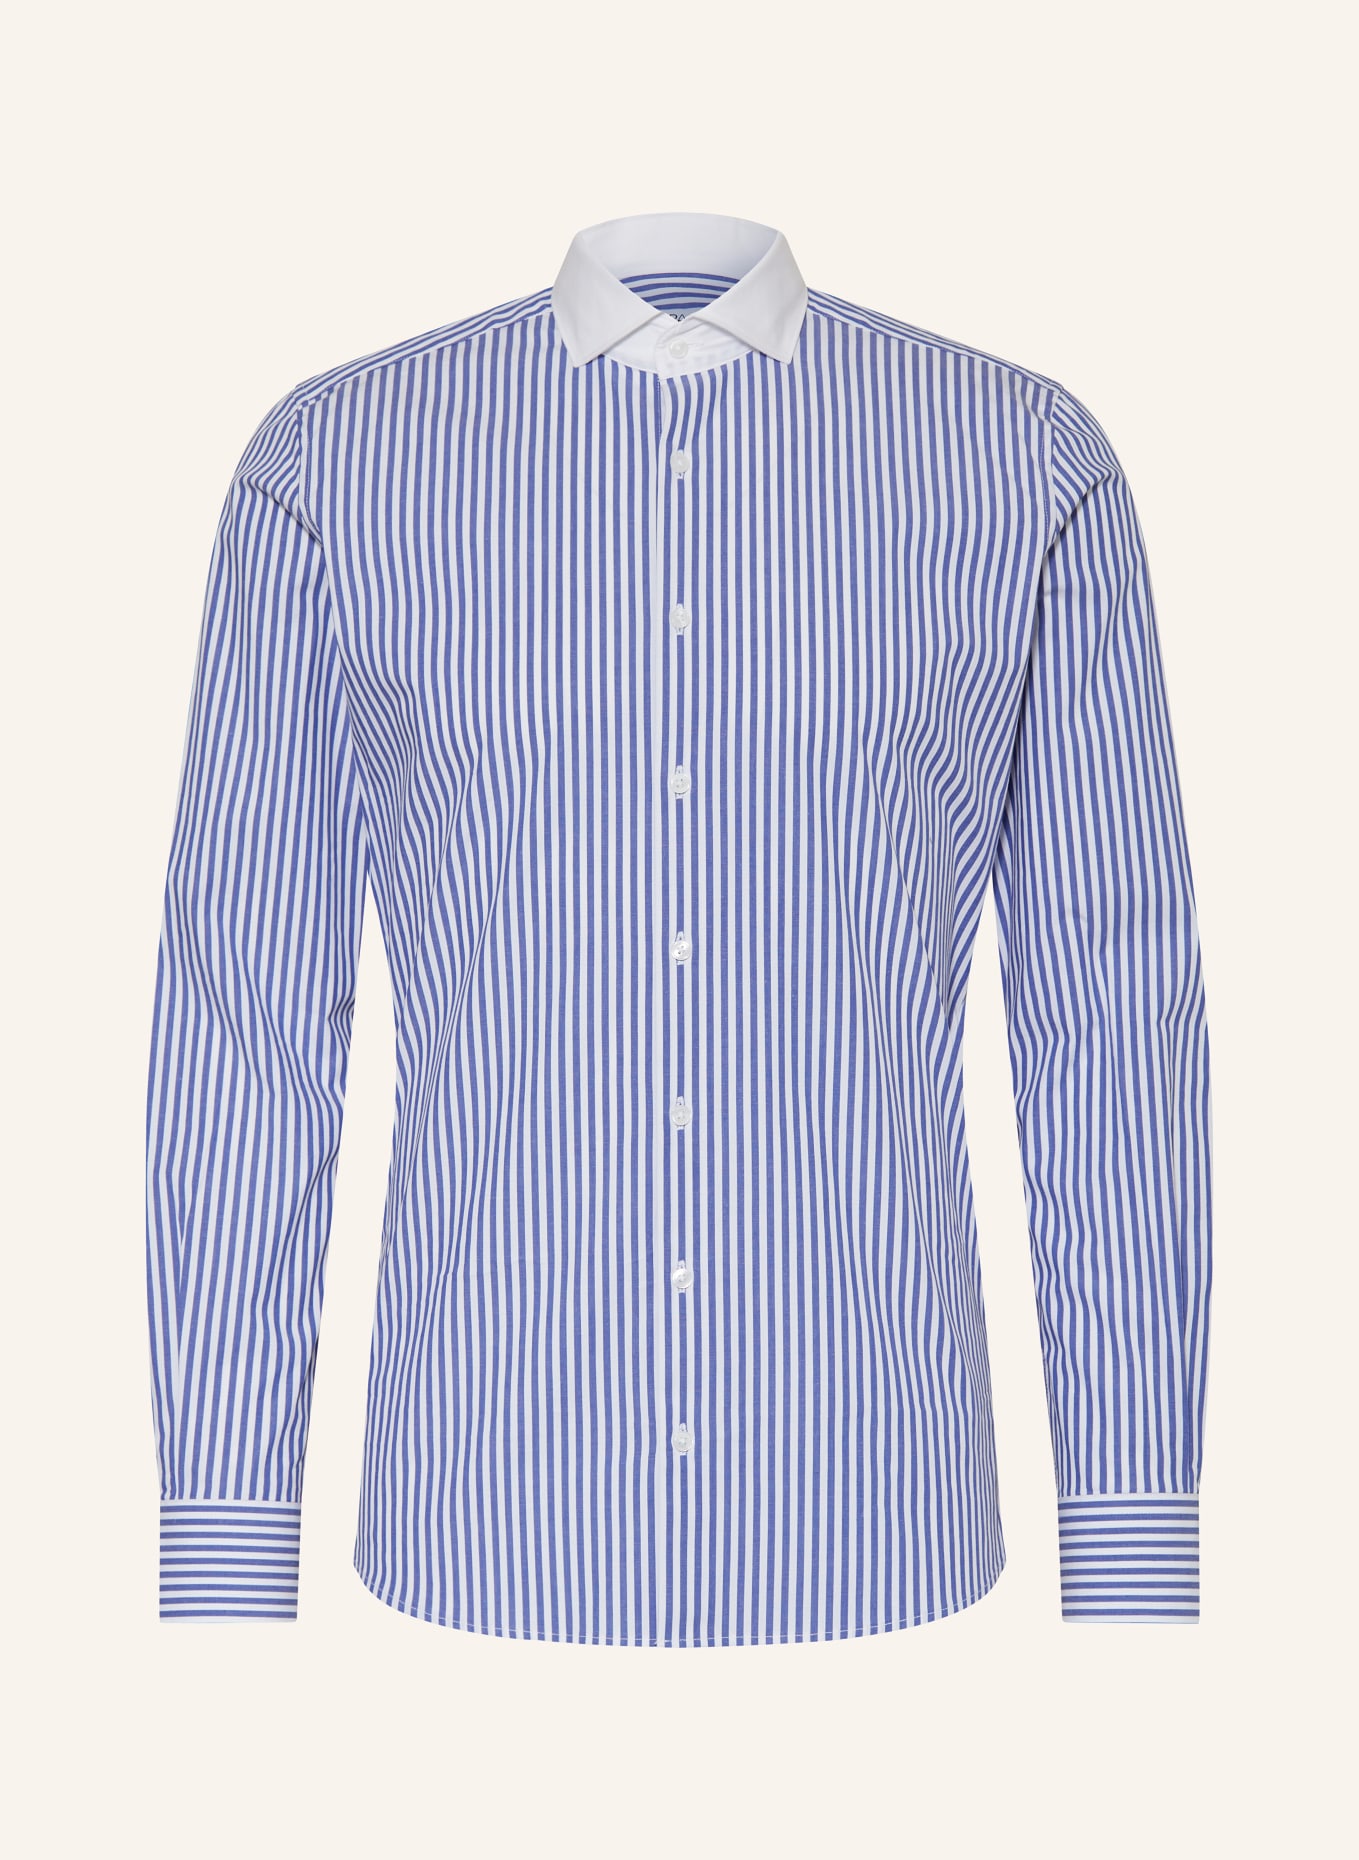 PAUL Shirt slim fit, Color: BLUE/ WHITE (Image 1)